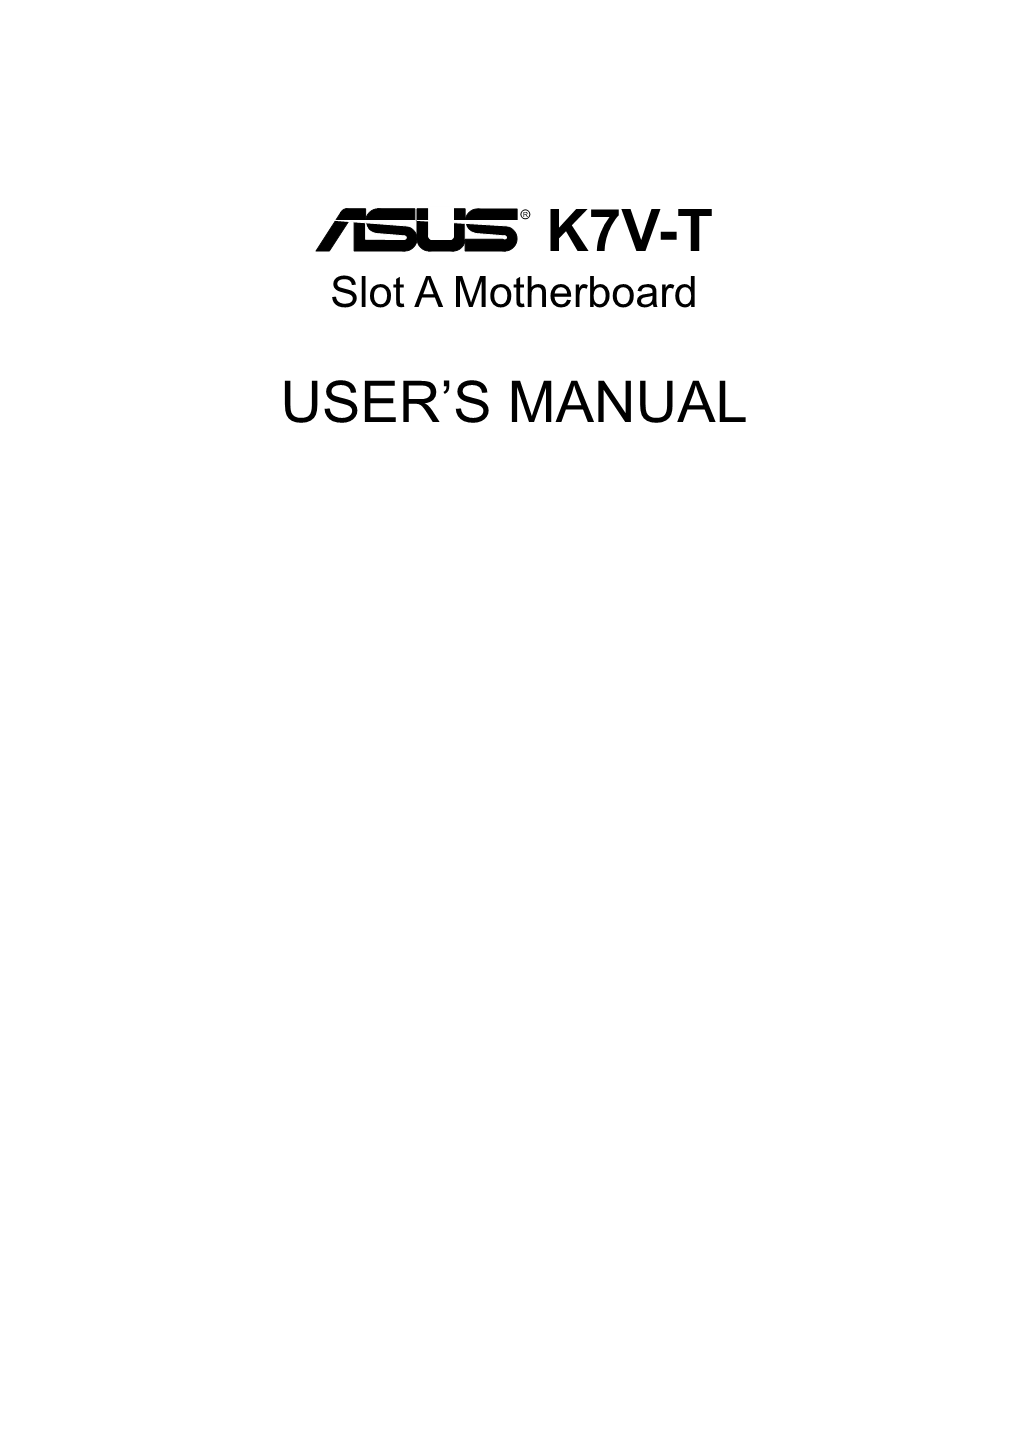 ASUS K7V-T Slot a Motherboard User's Manual